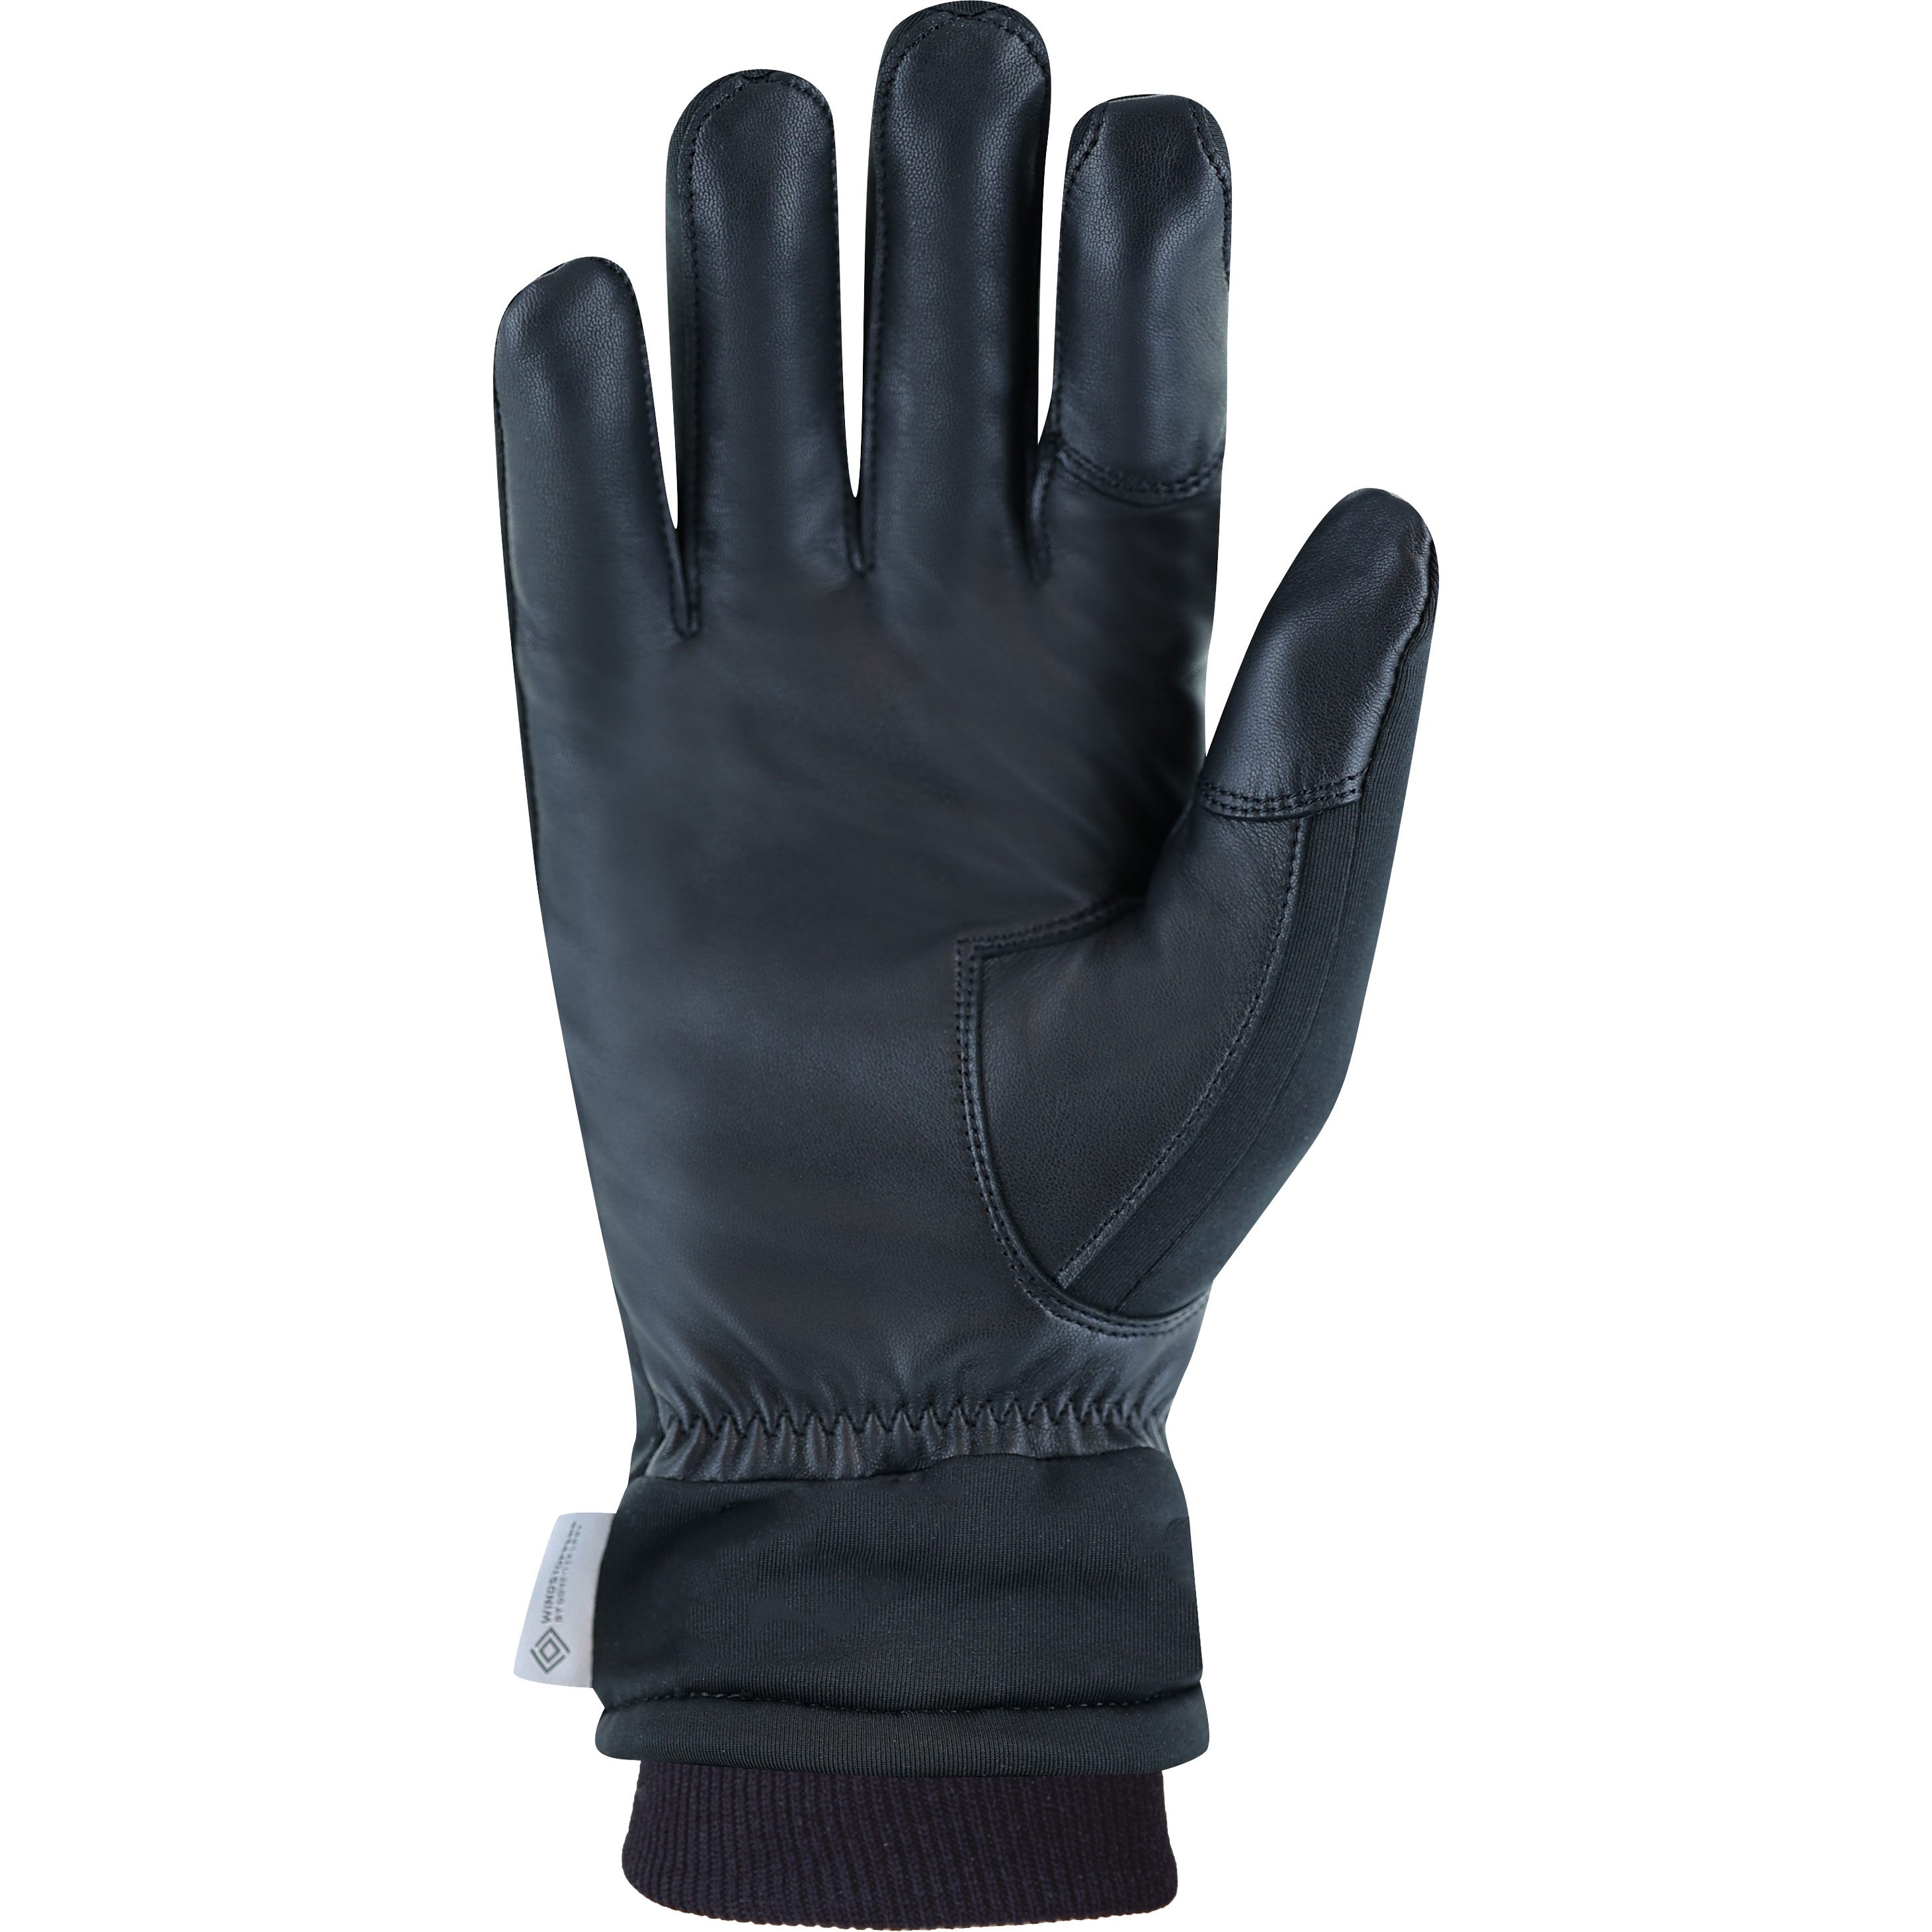 Roeckl Sports - Kolon 2 Handschuhe schwarz kaufen im Sport Bittl Shop